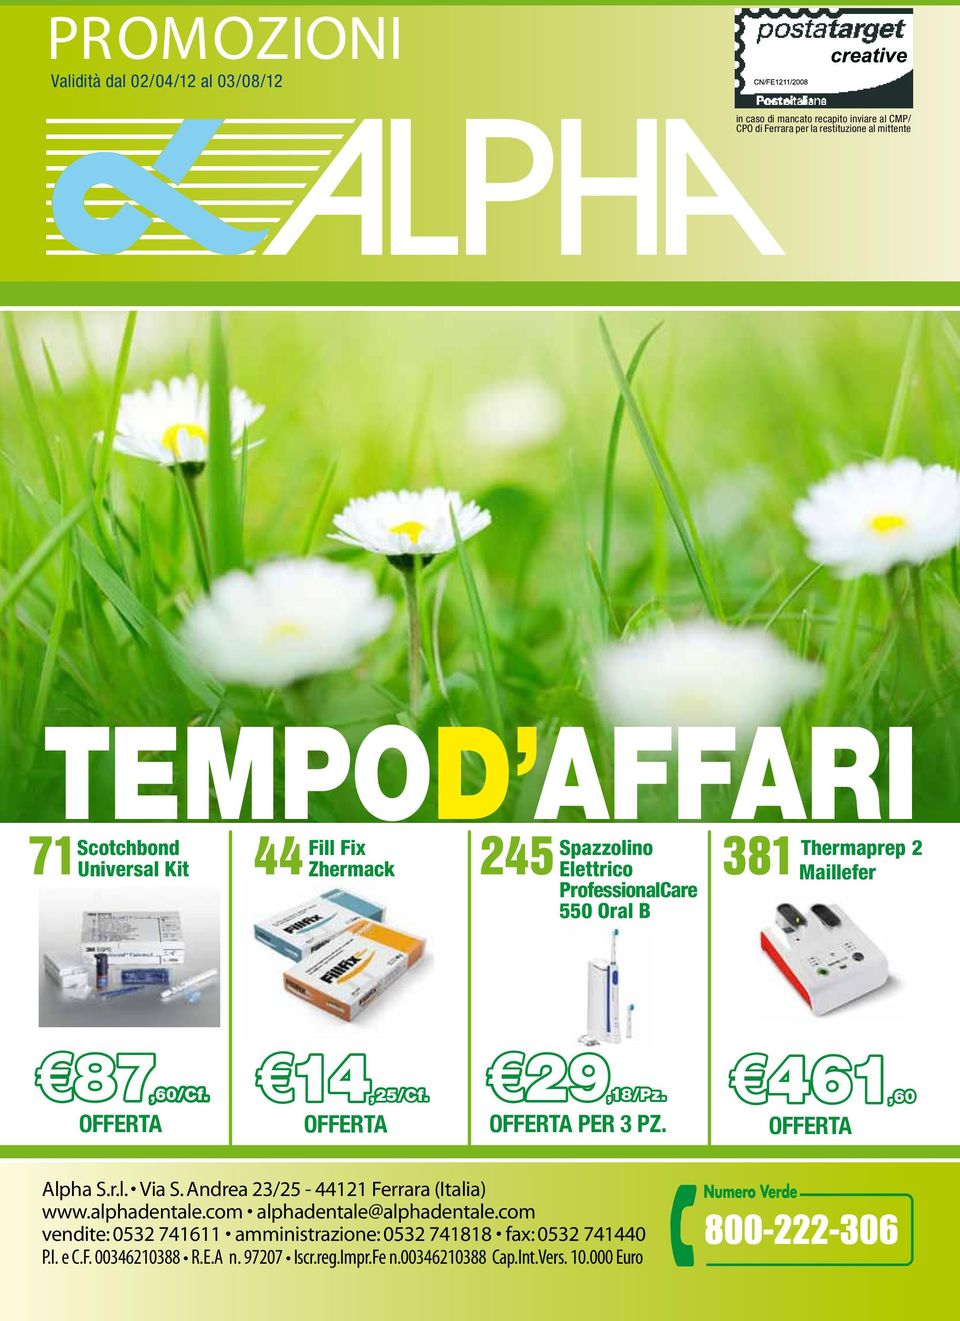 14,25/Cf. 29,18/Pz. per 3 Pz. 461,60 Alpha S.r.l. Via S. Andrea 23/25-44121 Ferrara (Italia) www.alphadentale.com alphadentale@alphadentale.